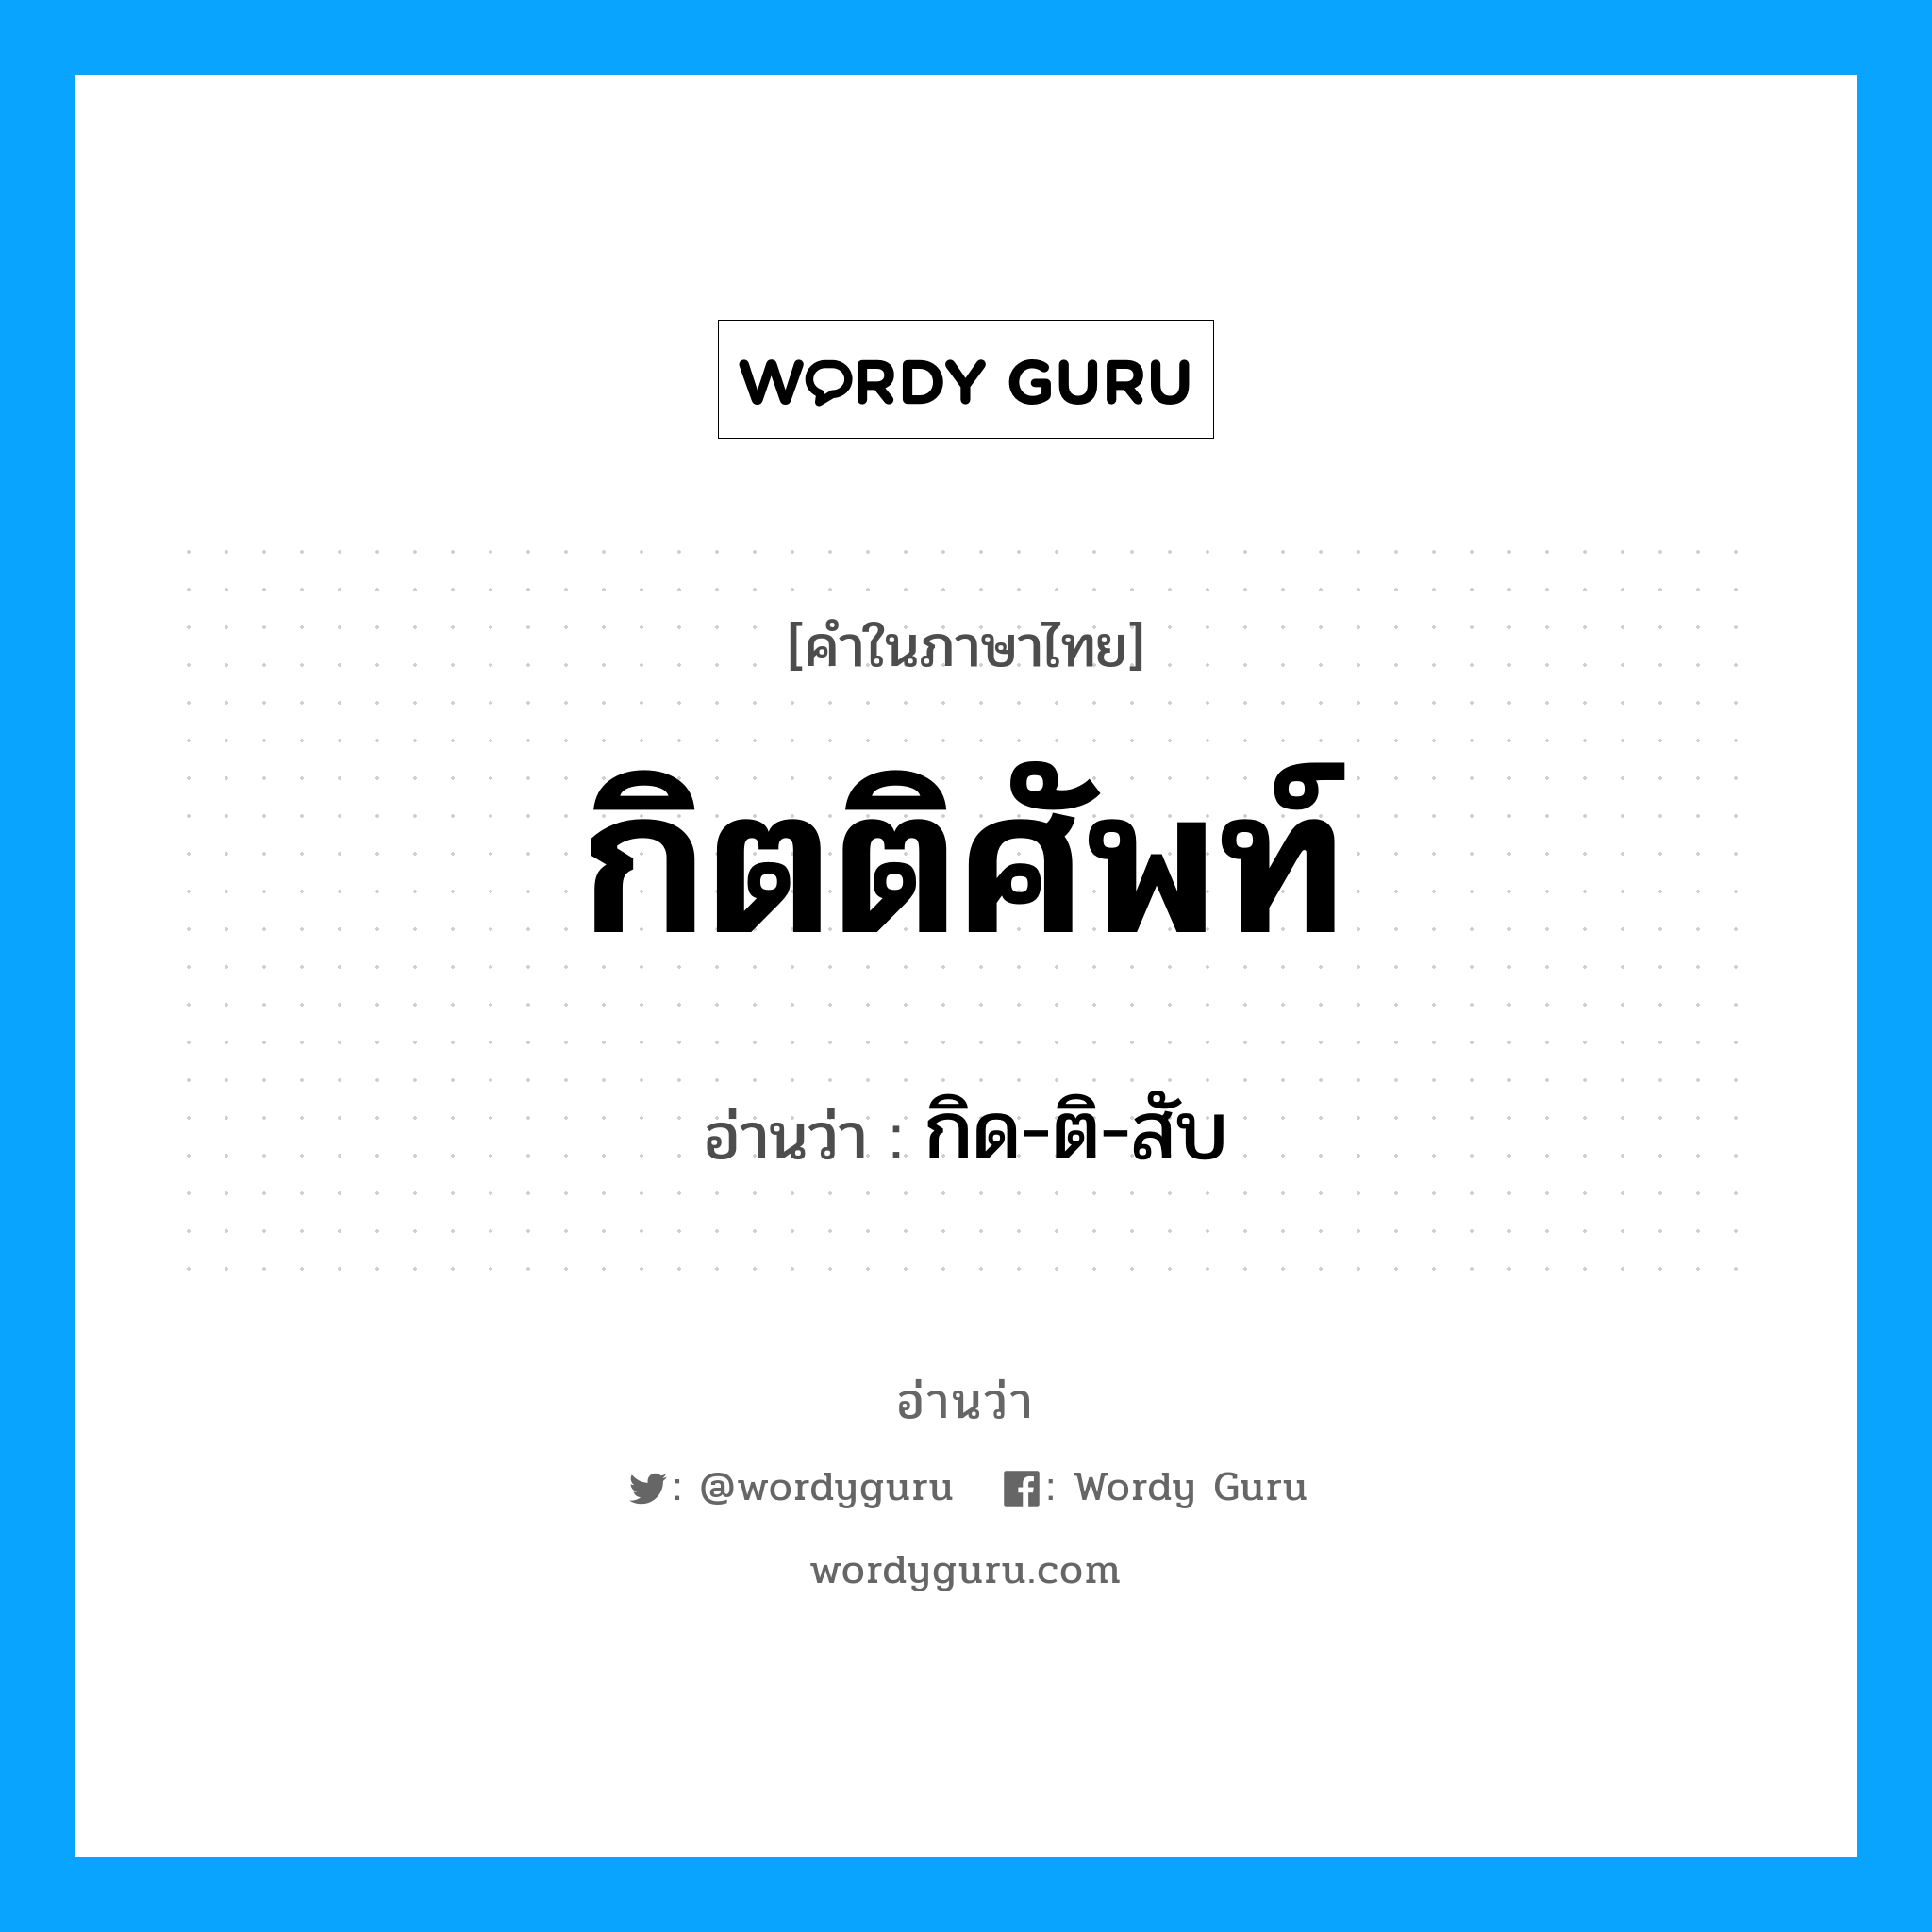 กิด-ติ-สับ เป็นคำอ่านของคำไหน?, คำในภาษาไทย กิด-ติ-สับ อ่านว่า กิตติศัพท์